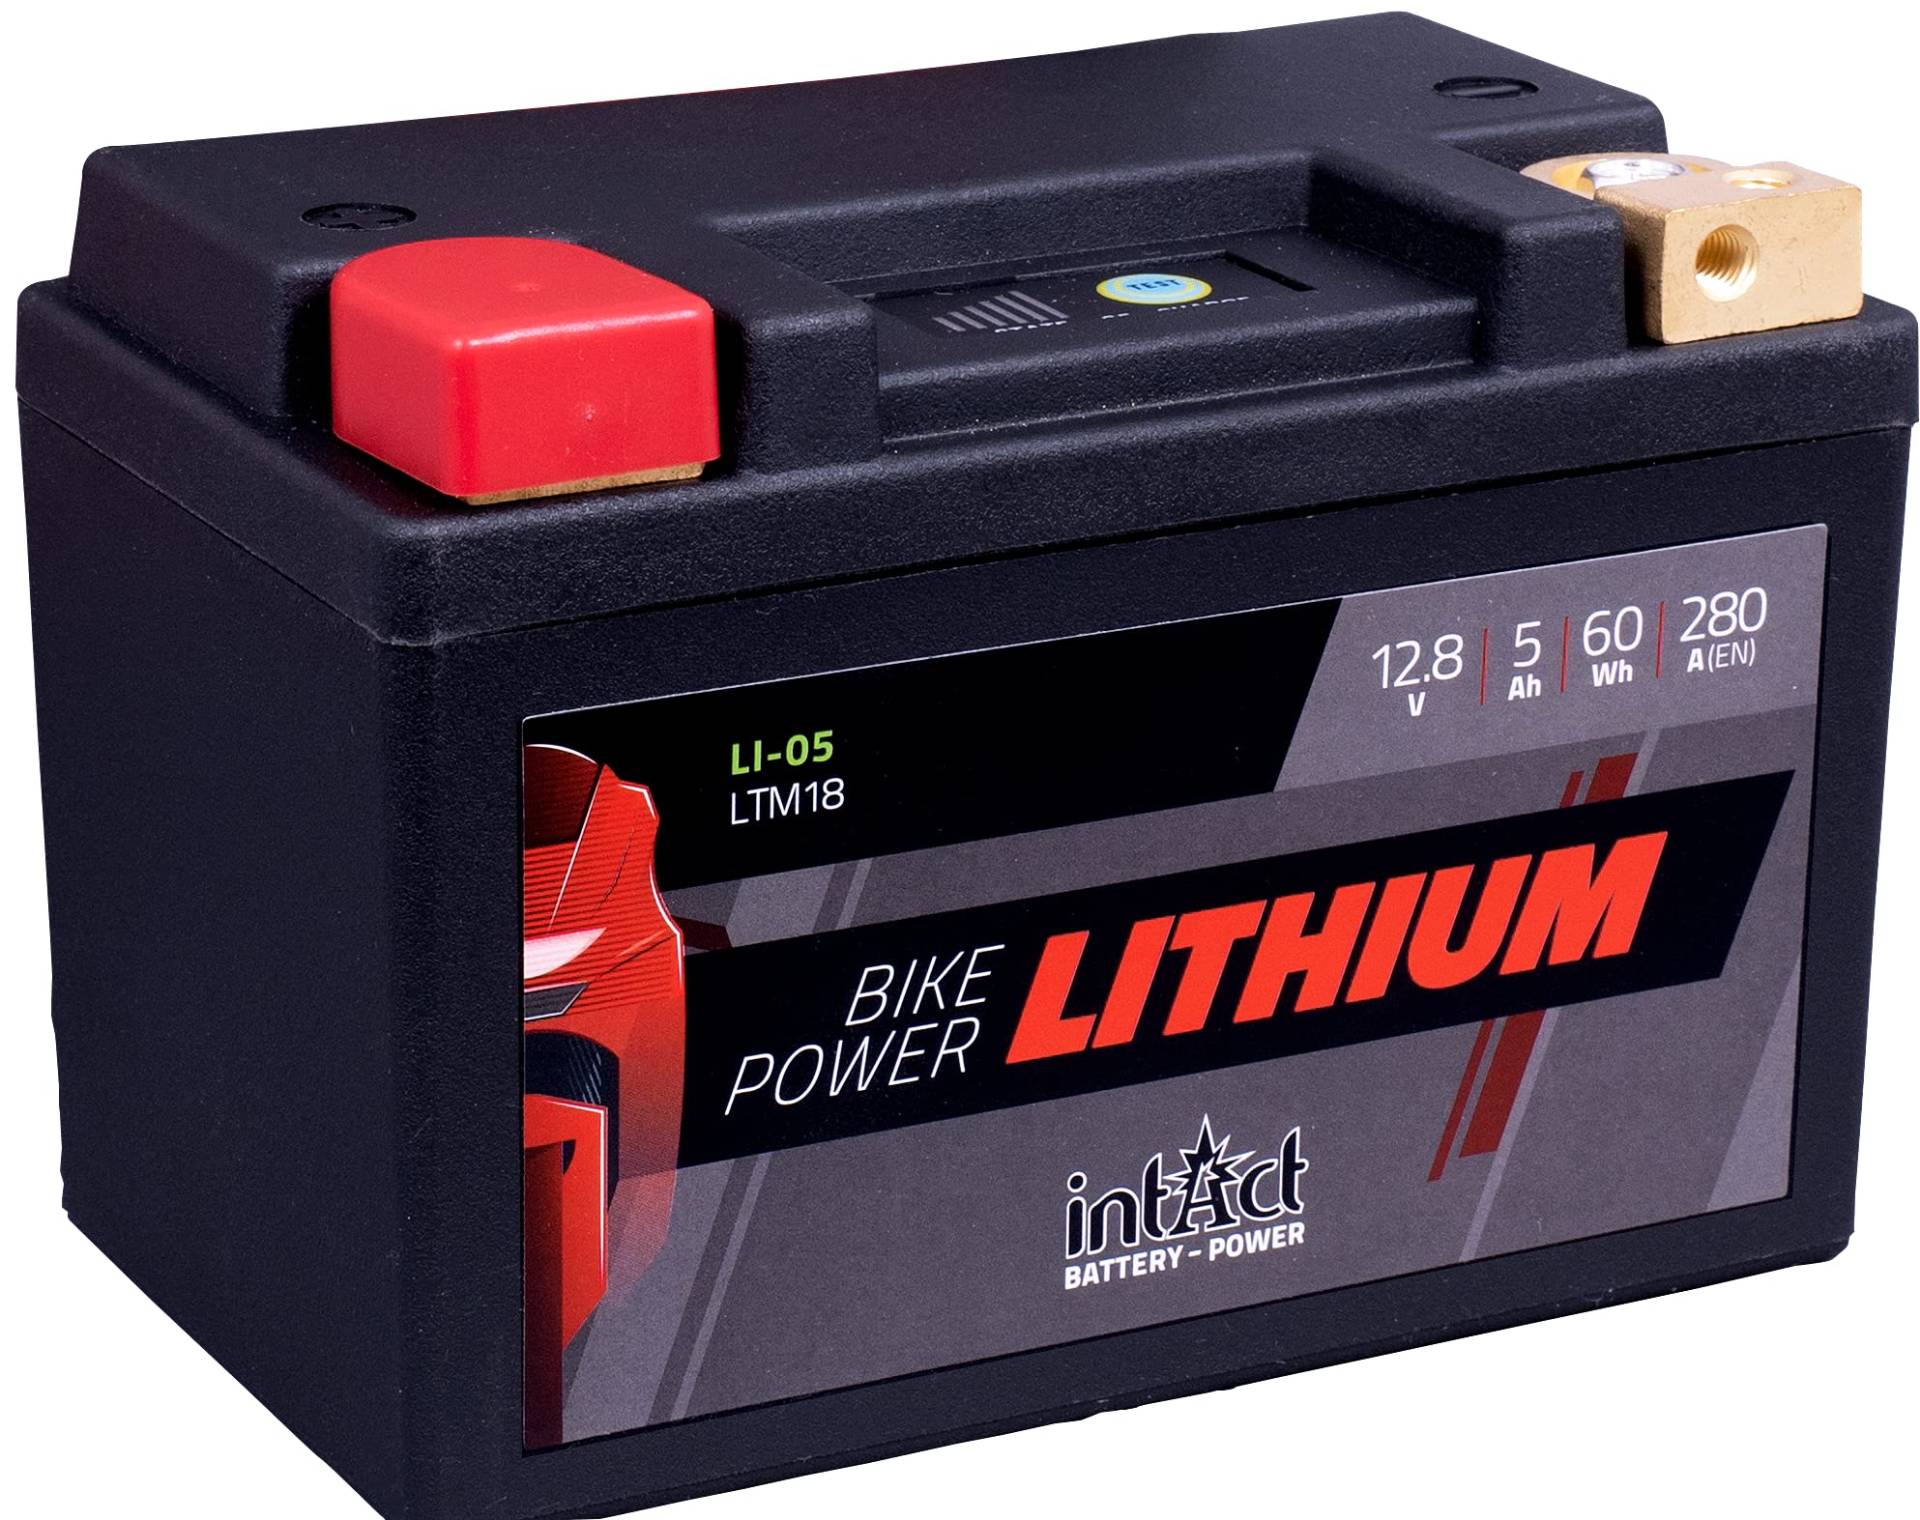 intAct - LITHIUM MOTORRADBATTERIE | Batterie für Roller, Motorrad, Quads uvm. Bis zu 75% Gewichtseinsparung | Bike-Power LI-05, LTM18, 12,8V Batterie, 5 AH (c10), 60 Wh, 280 A (CCA) | Maße: 148x86x105mm von Intact